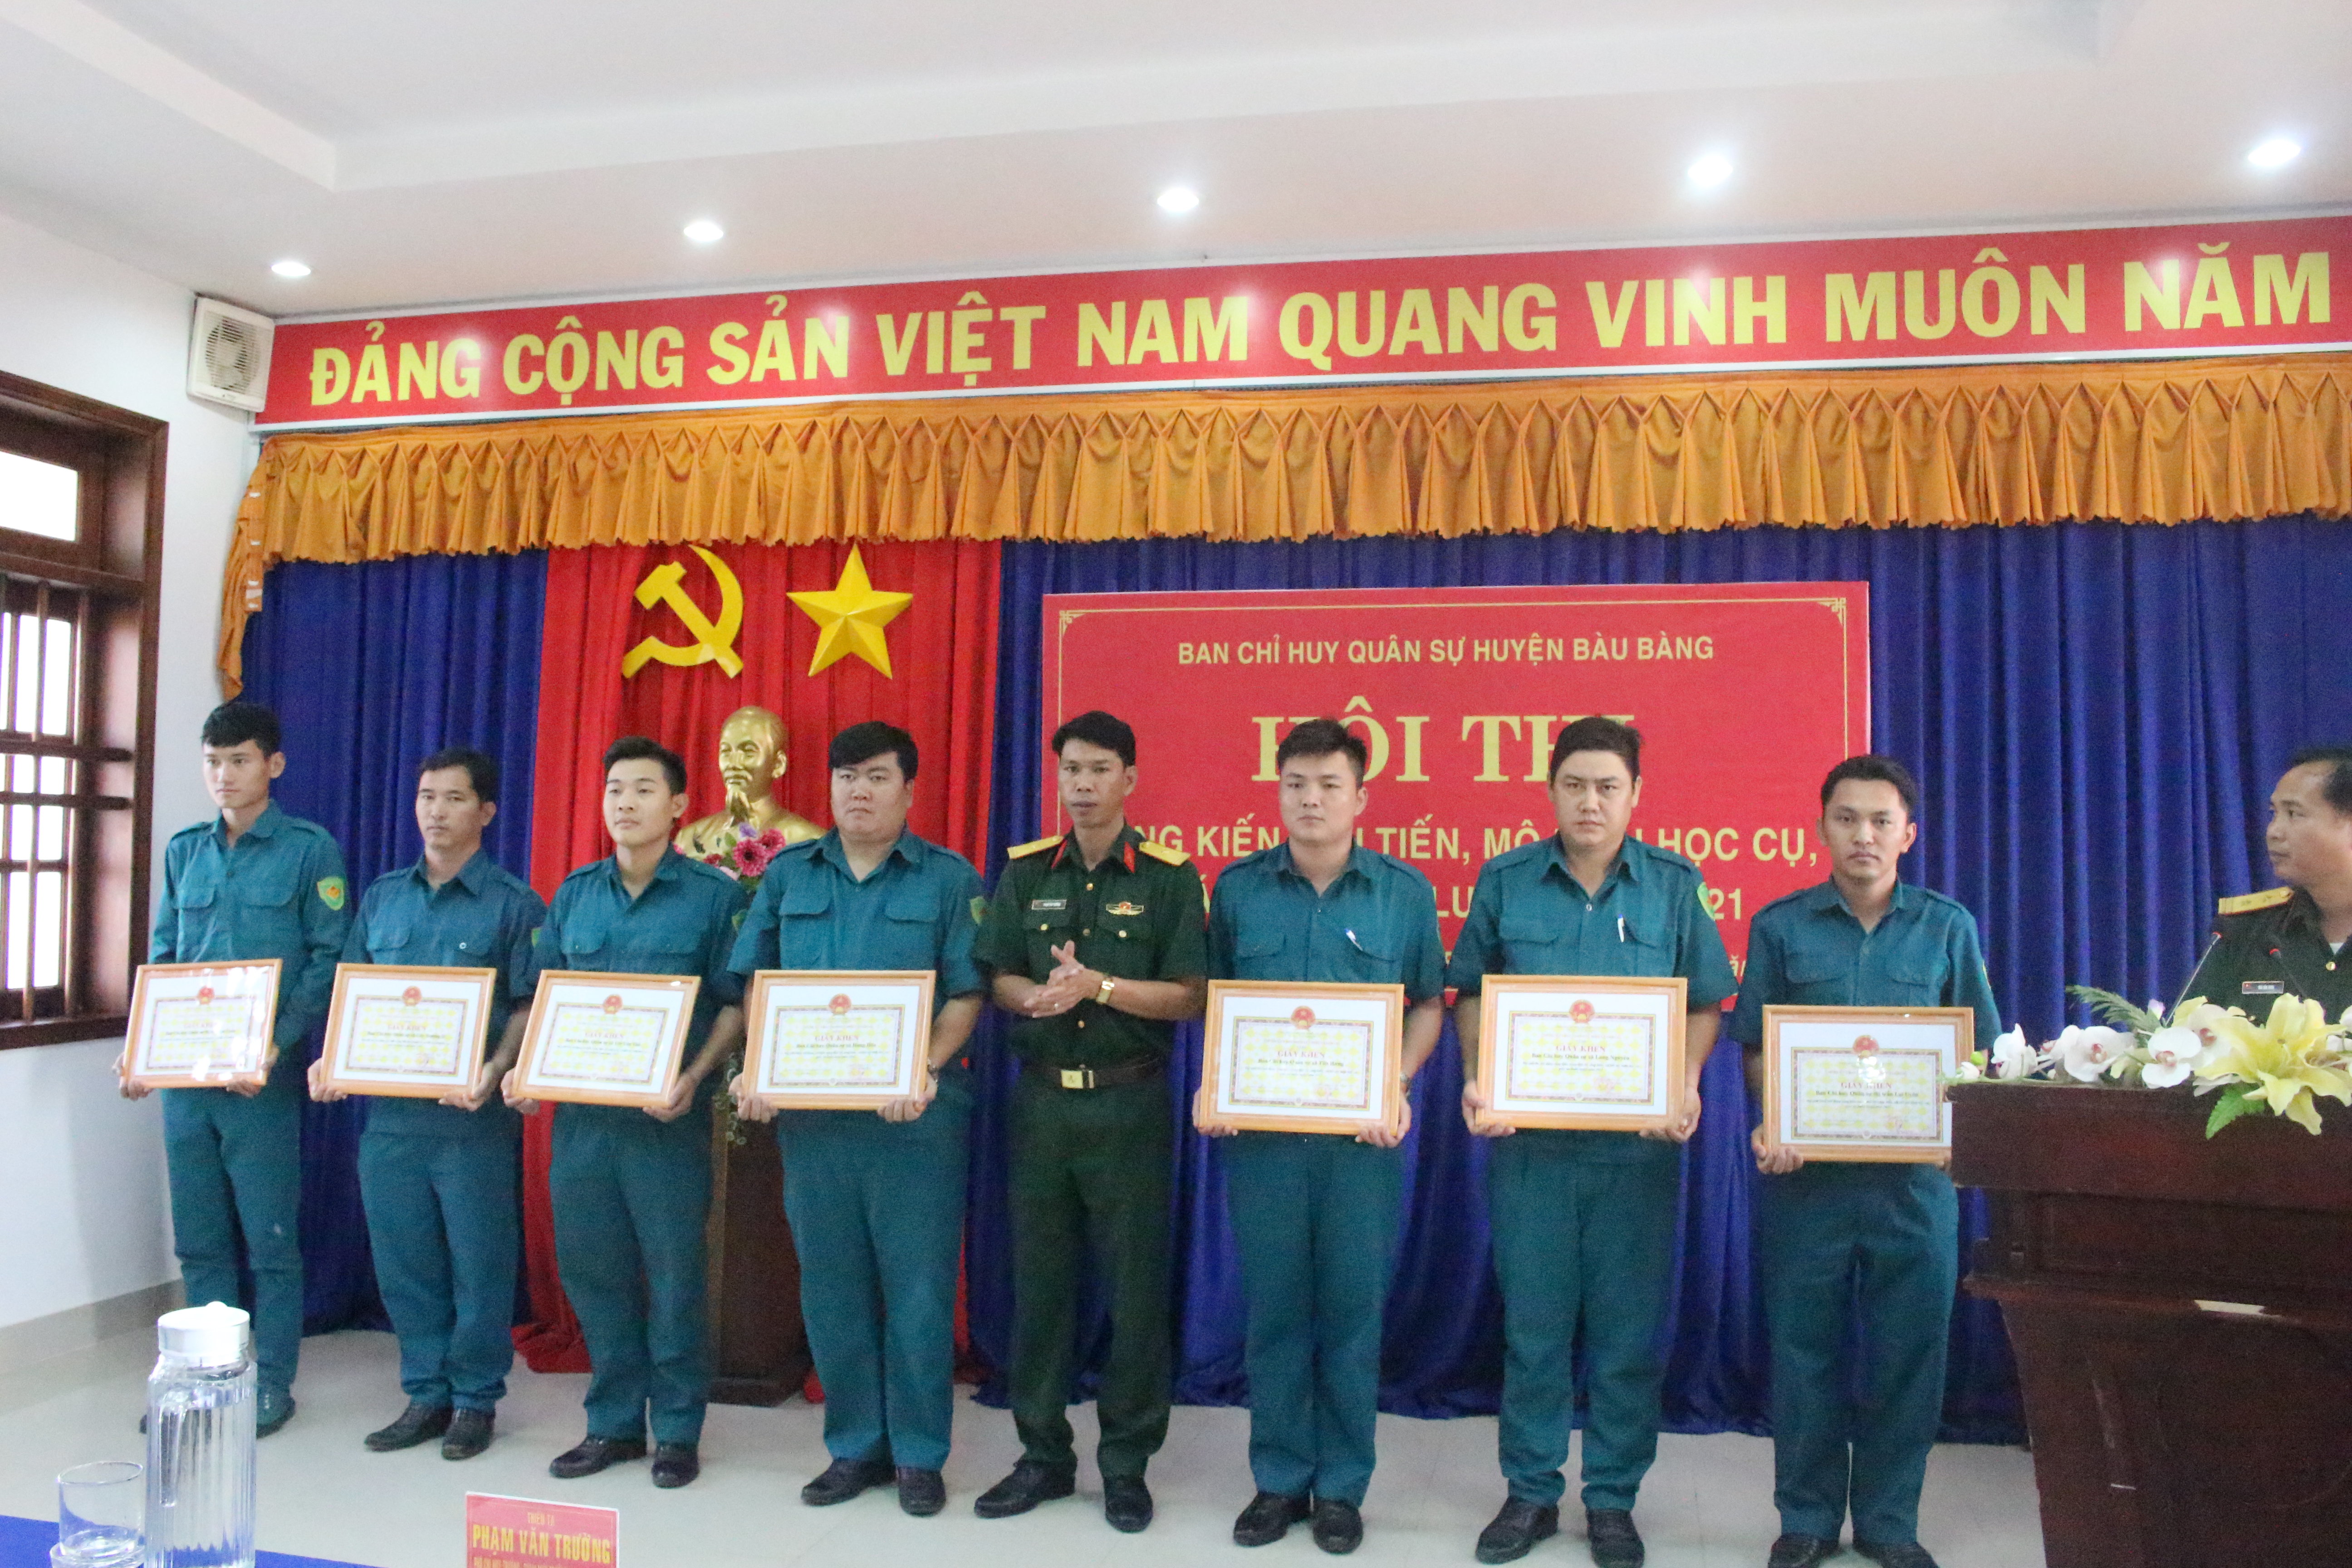 Ban CHQS huyện Bàu Bàng bế mạc Hội thi sáng kiến, cải tiến mô hình, học cụ huấn luyện